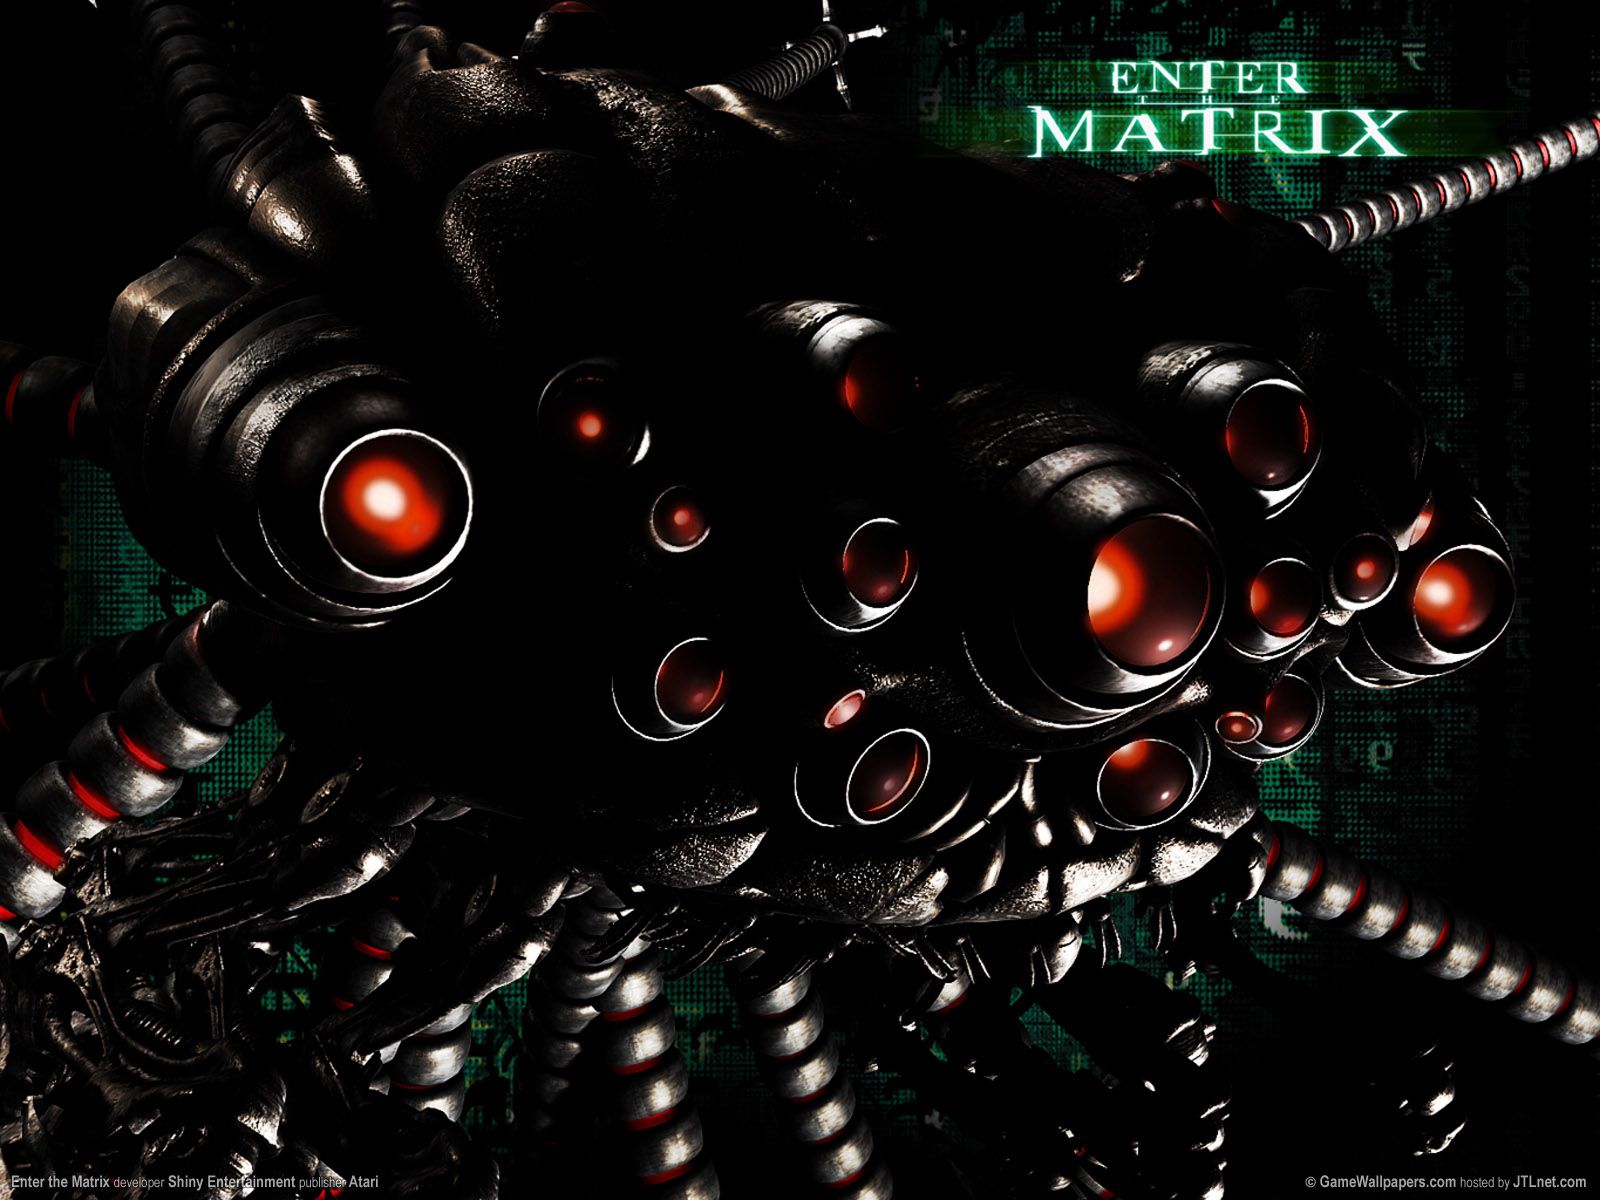 Enter the Matrix wallpapers | Enter the Matrix stock photos